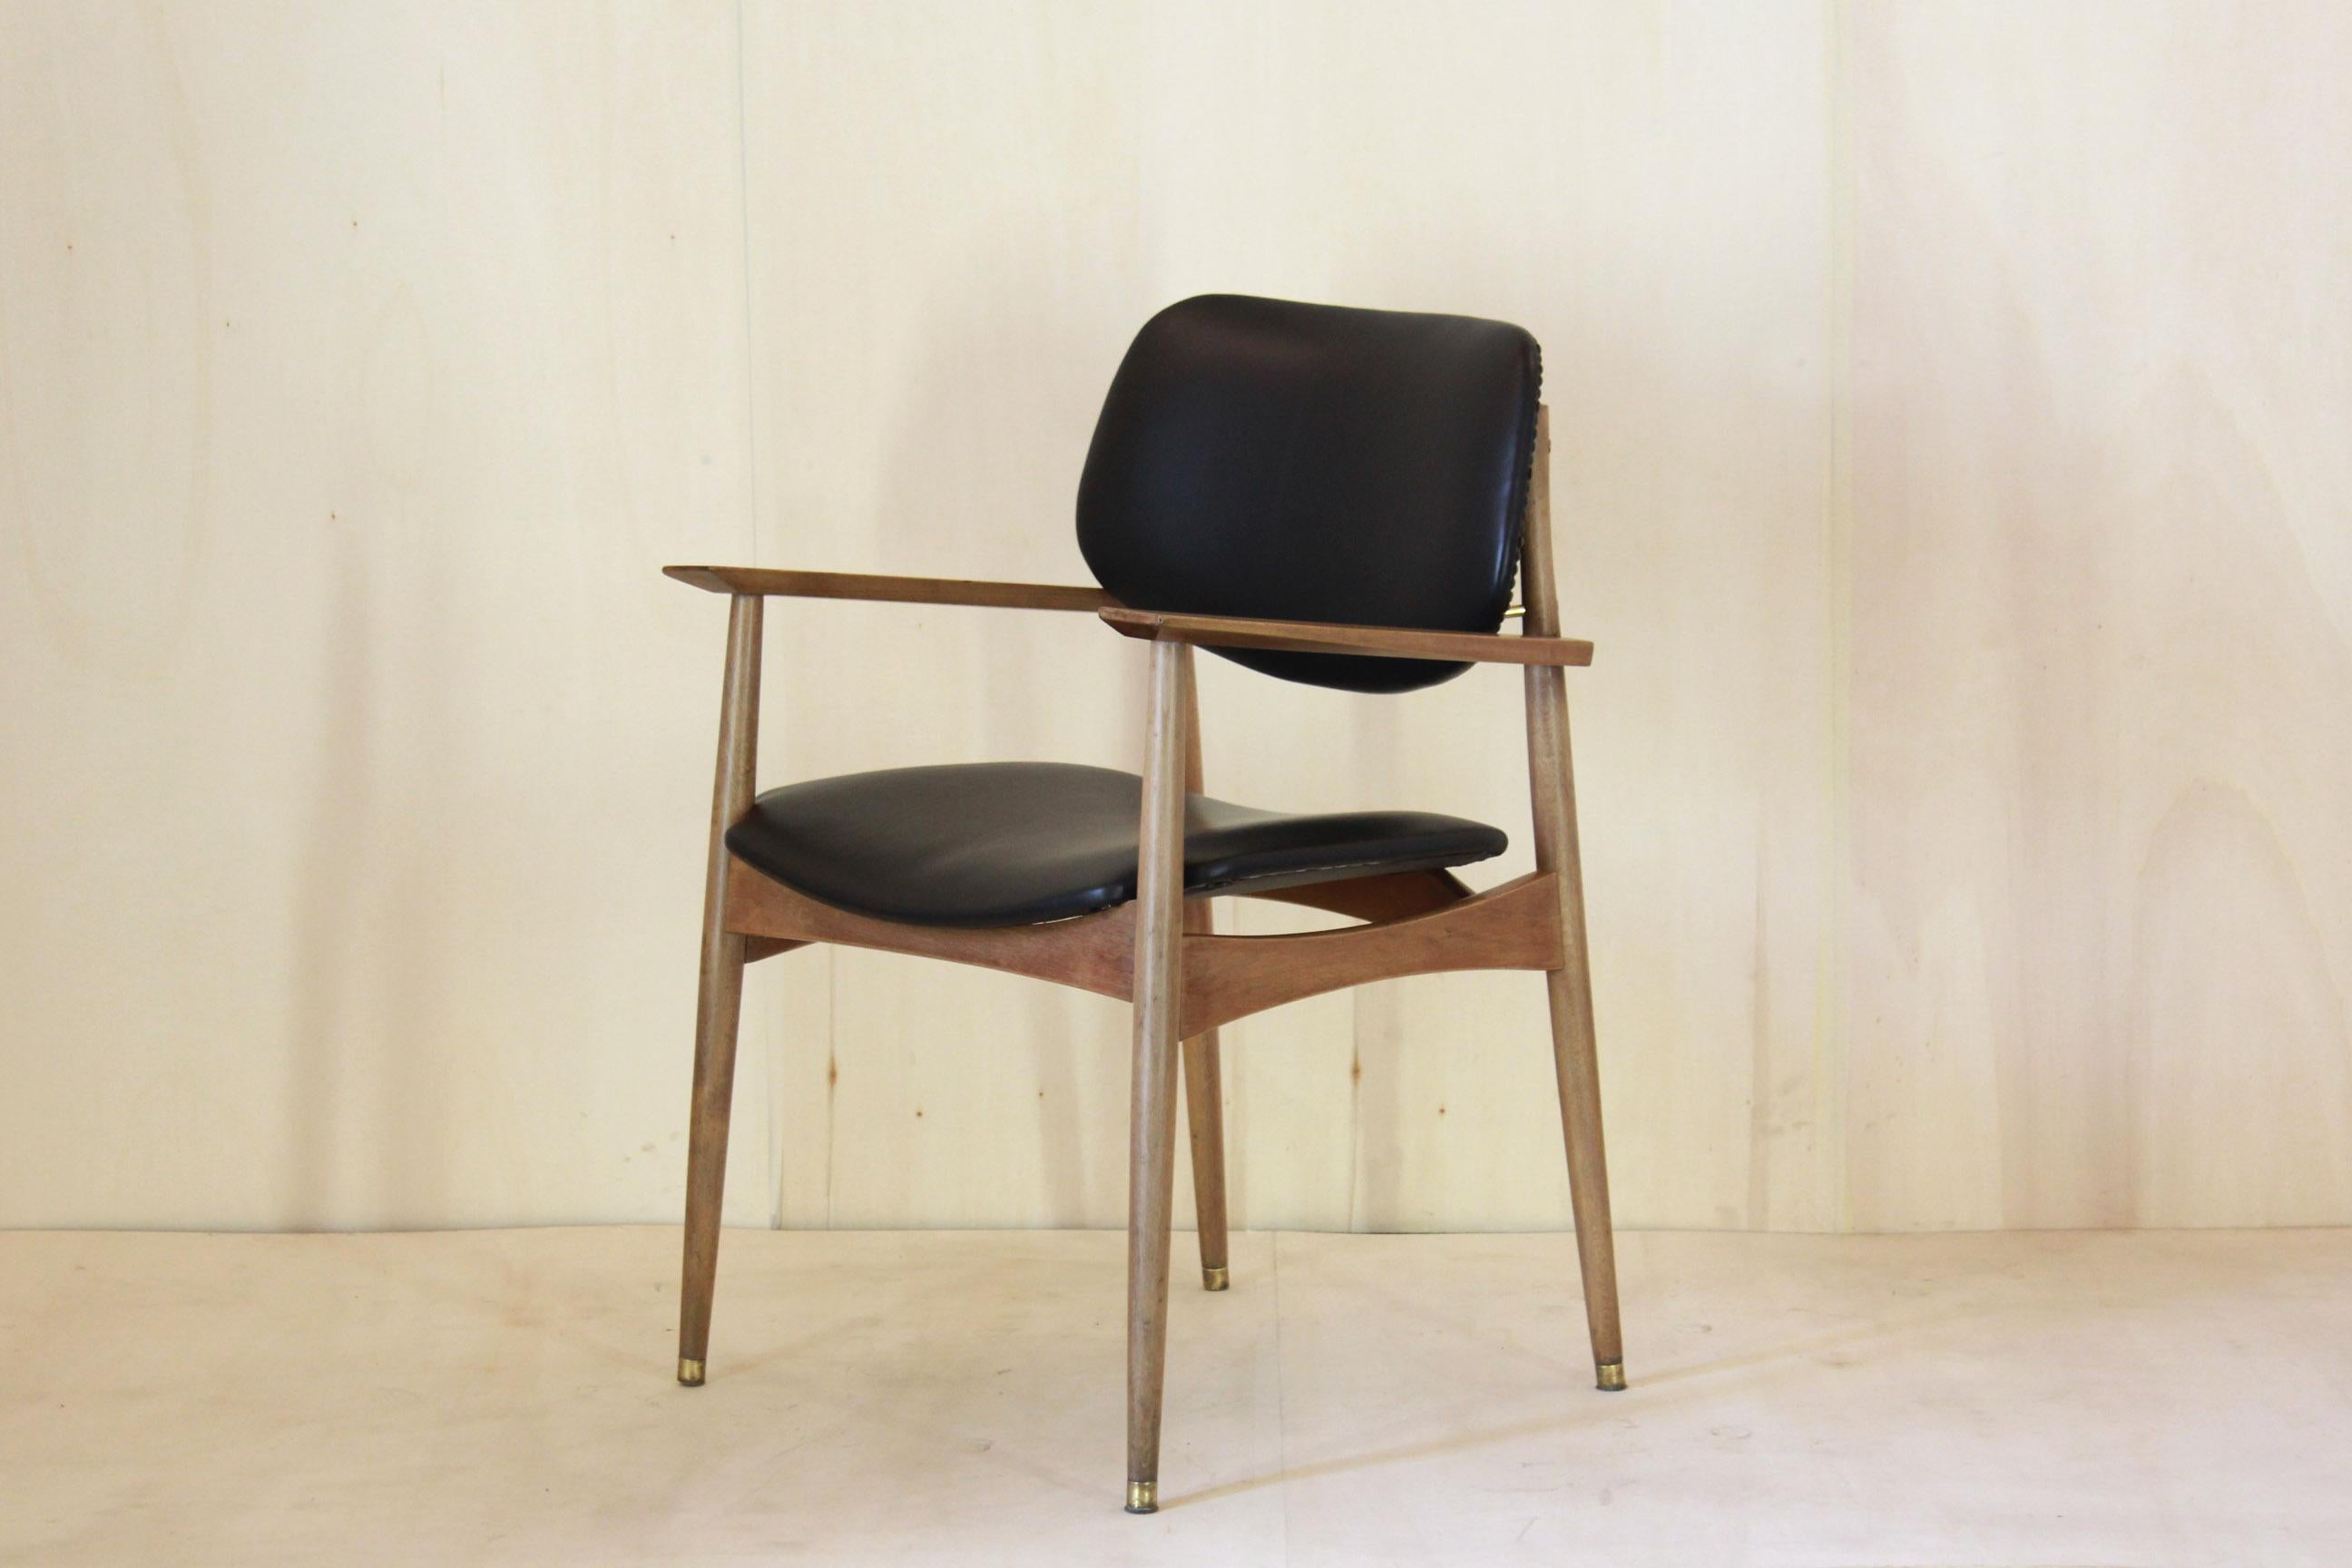 Vintage Bürostühle, Leder, Italien 1950er Jahre.
Lounge-/Schreibtischsessel mit Holzgestell und Sitz und Rückenlehne aus Rinderleder. Der Gegenstand wurde wie folgt wiederhergestellt:
Das Holz wurde poliert und gereinigt
Das Leder wurde durch ein